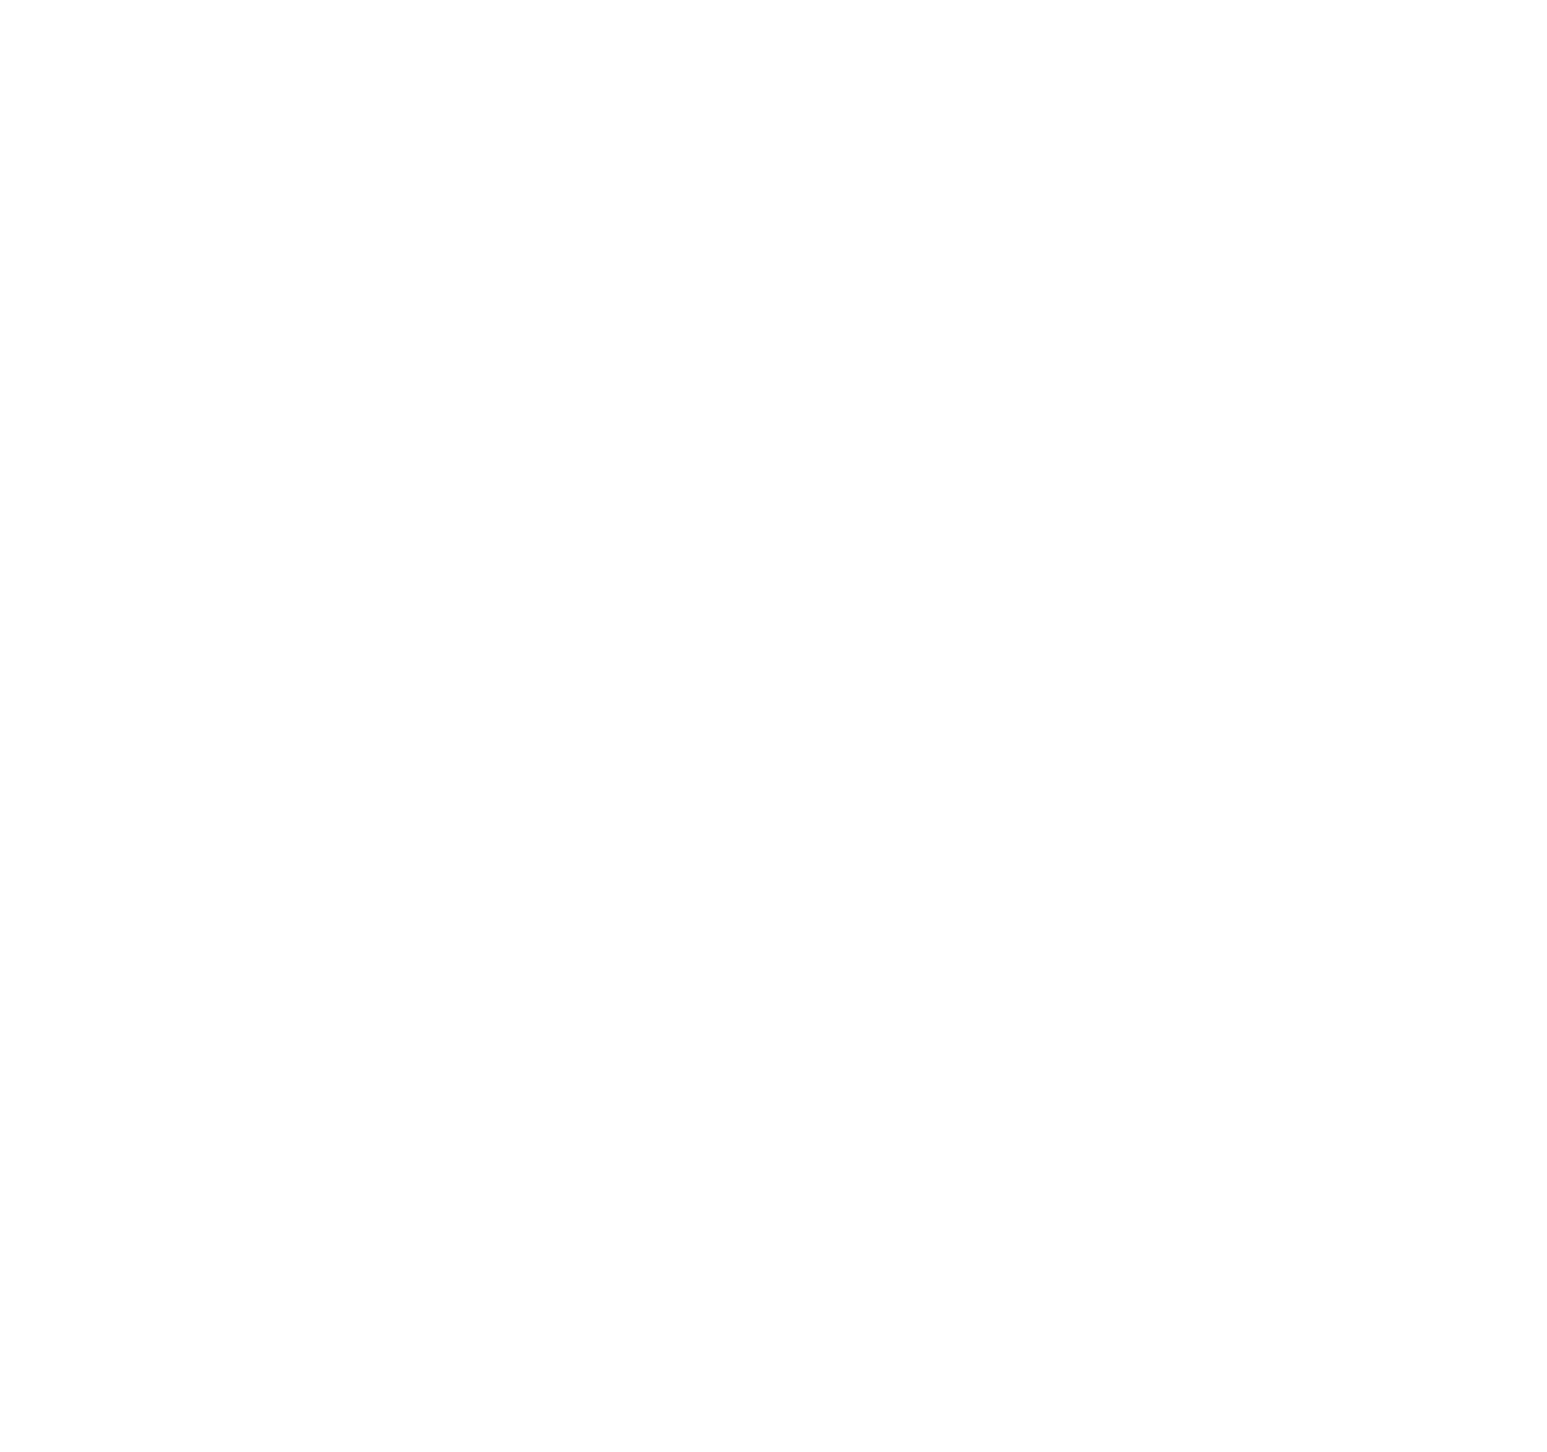 Hitachi logo for dark backgrounds (transparent PNG)